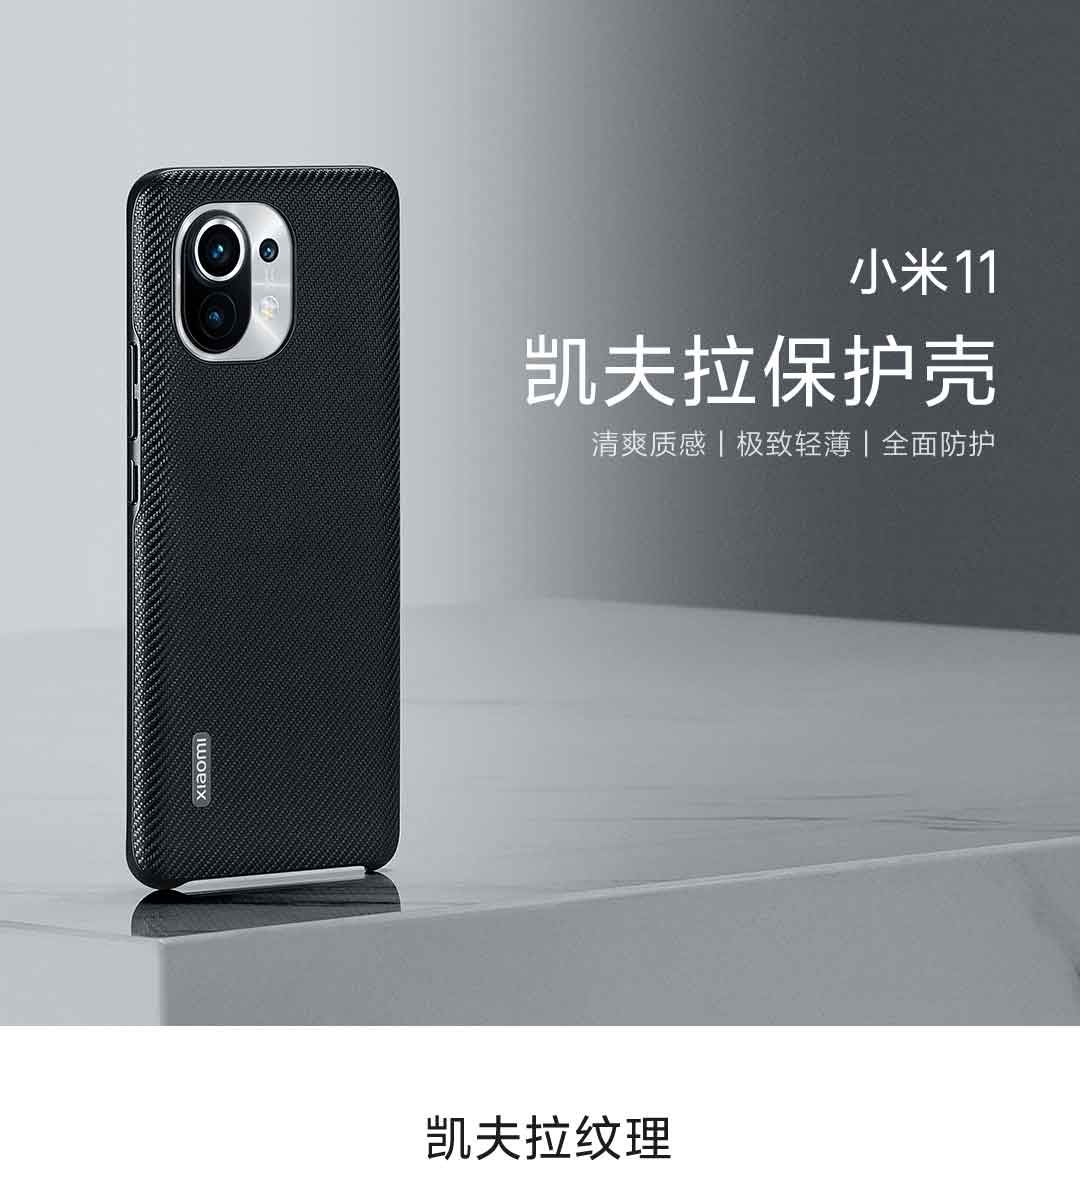 Fundas oficiales Xiaomi Mi 11 Lite a la venta - Noticias Xiaomi